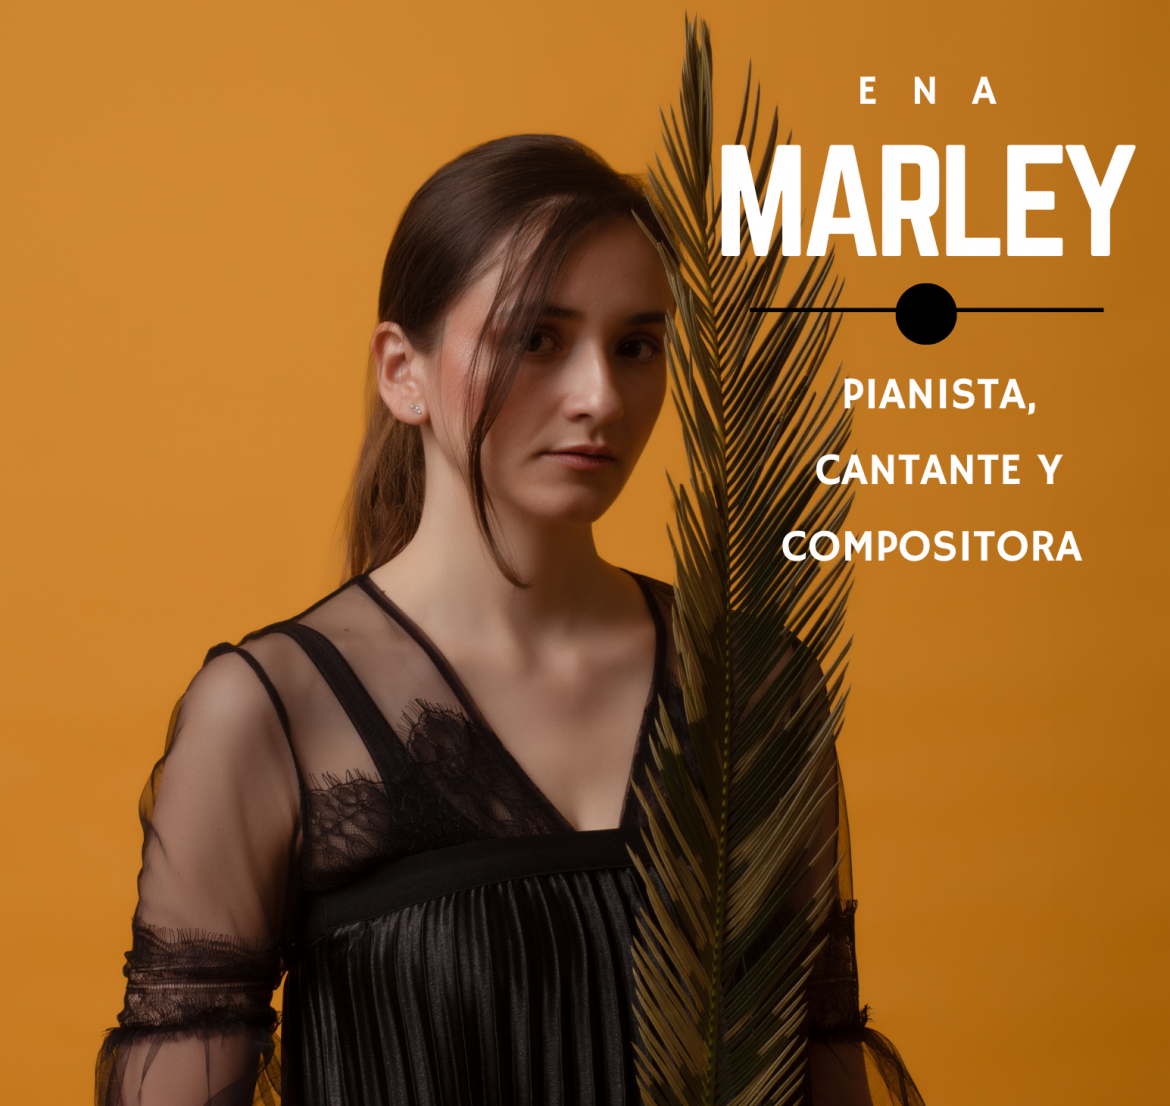 Ena Marley, pianista, cantante y compositora